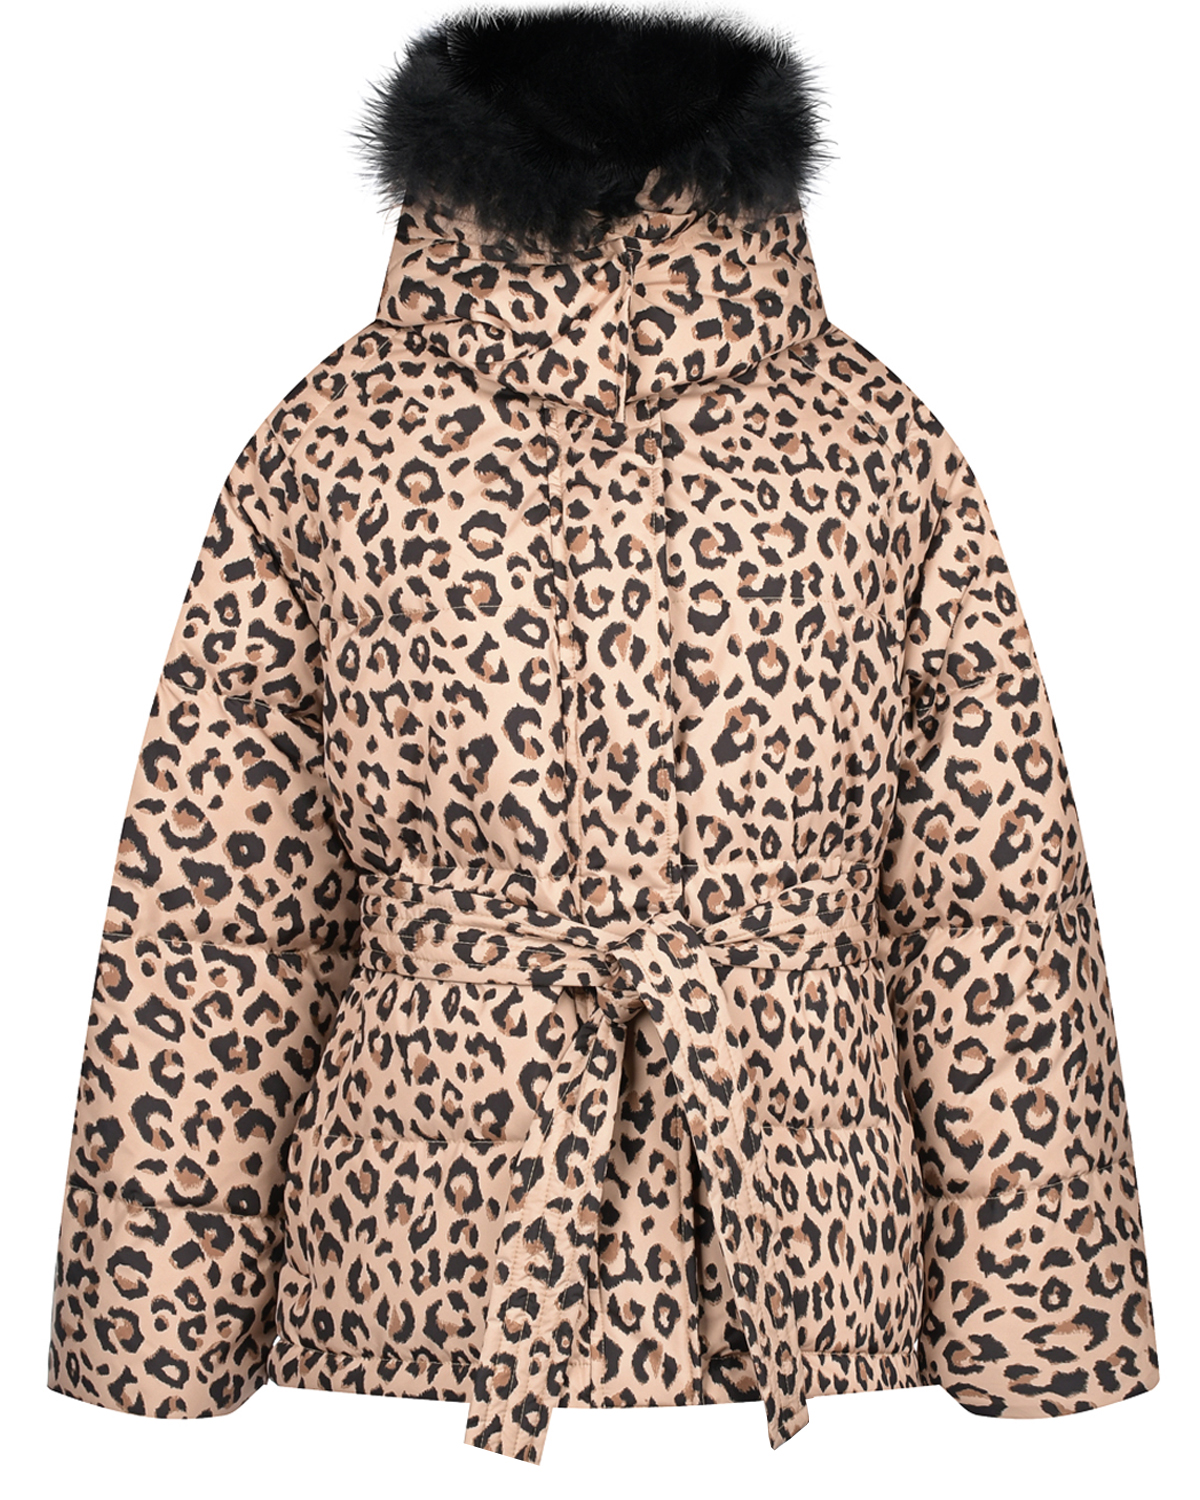 Куртка с леопардовым принтом Yves Salomon, размер 38, цвет бежевый